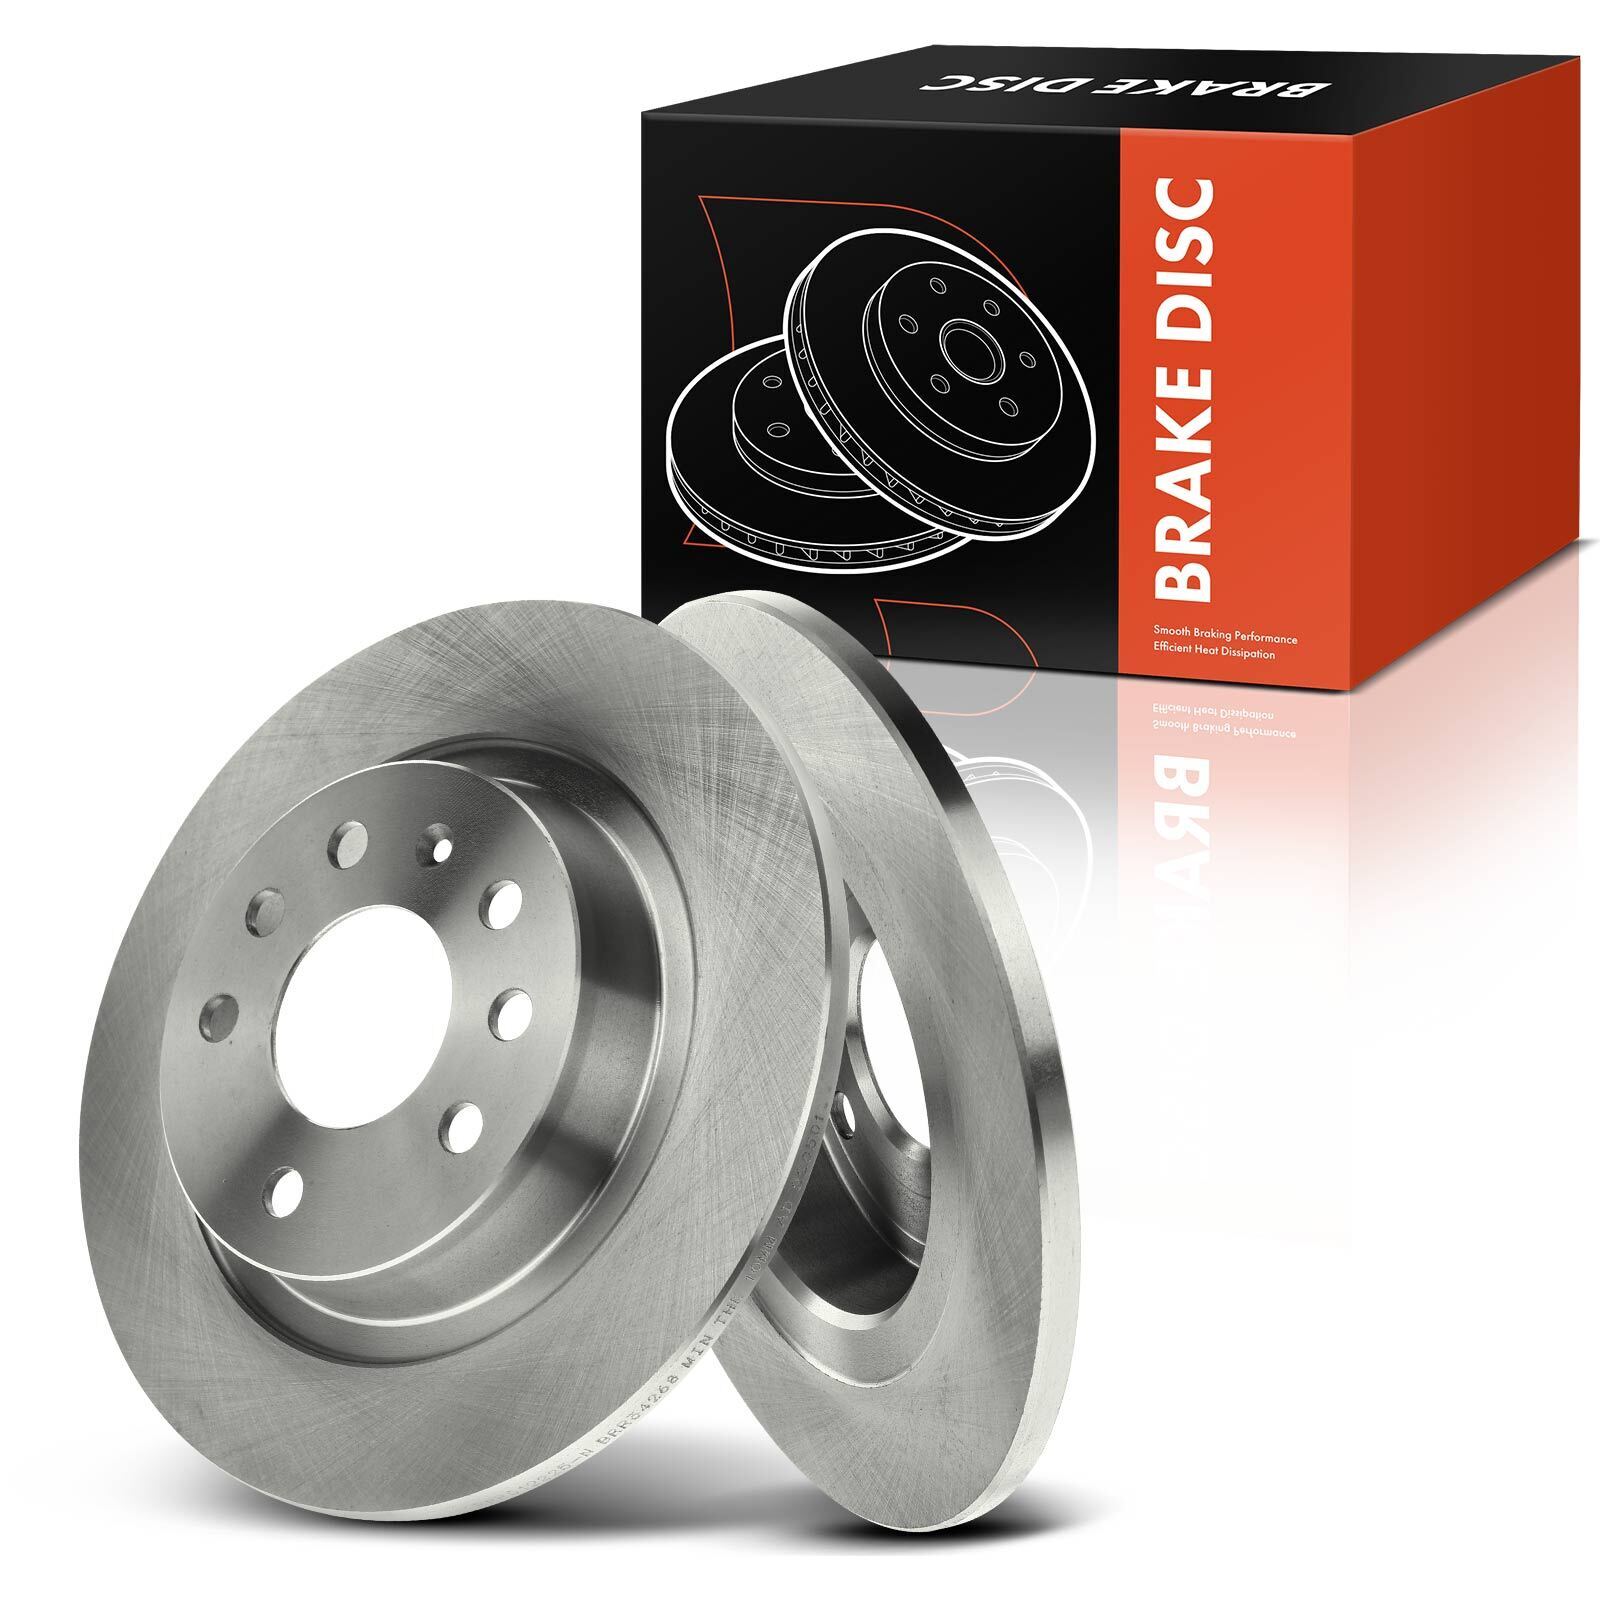 Rear Disc Brake Rotors for Saab 9-3 2003-2011 9-3X 2010-2011 L4 2.0L with 278mm